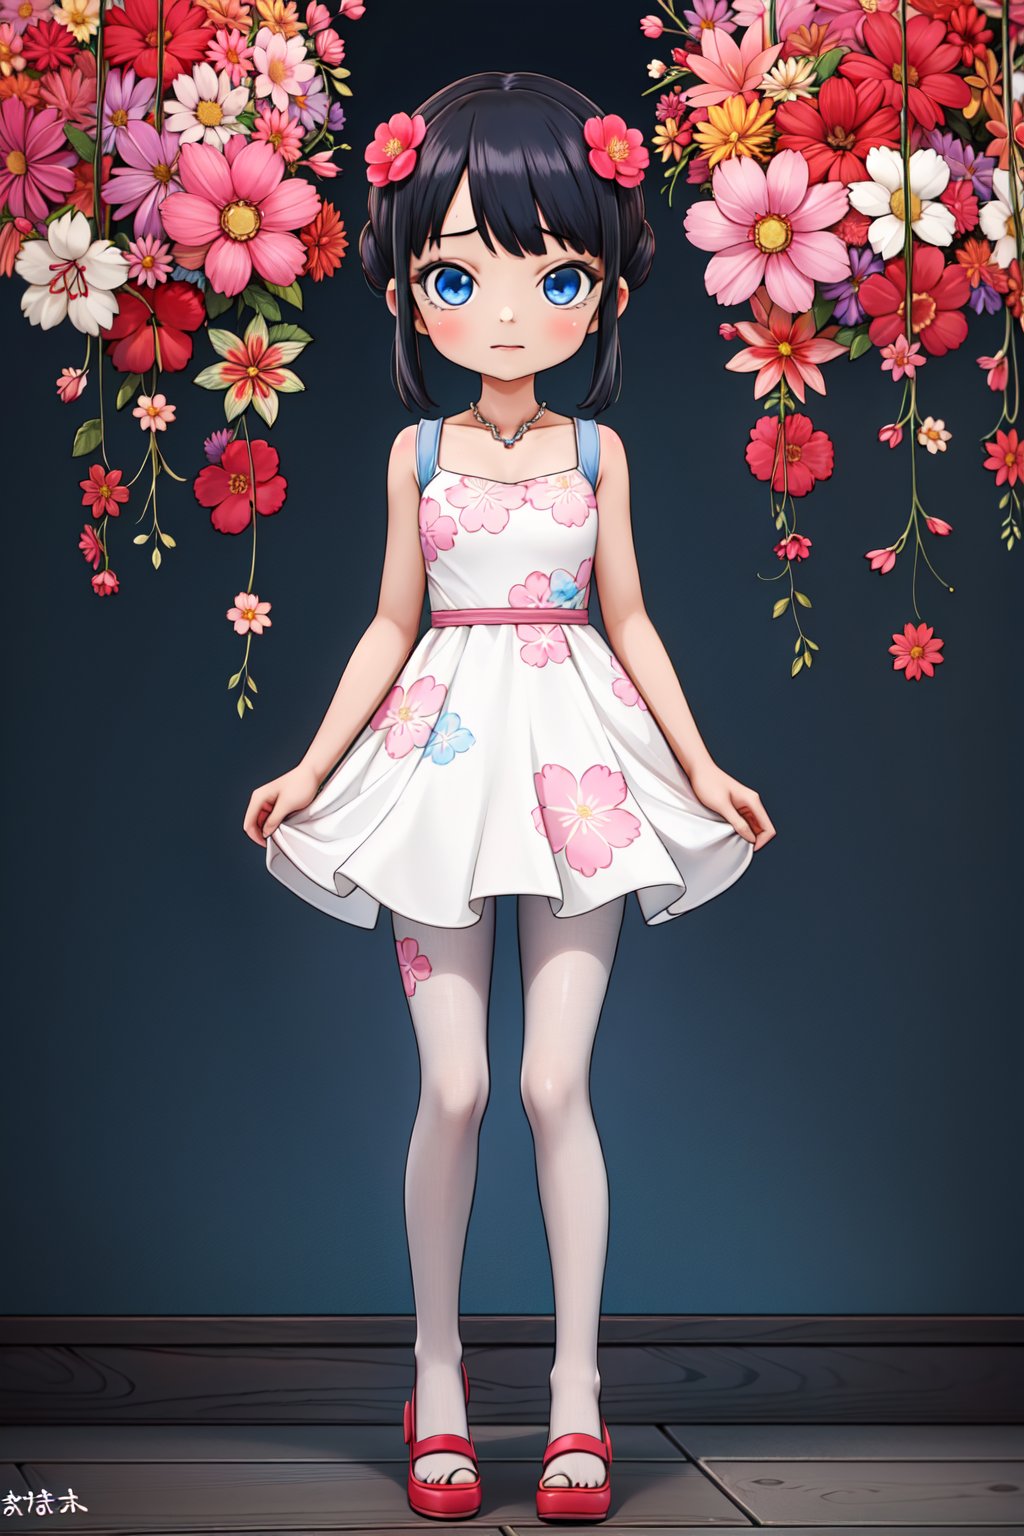 (1girl, solo,(Komejouki), white dress, floral print, blue eyes, black pantyhose,standing)